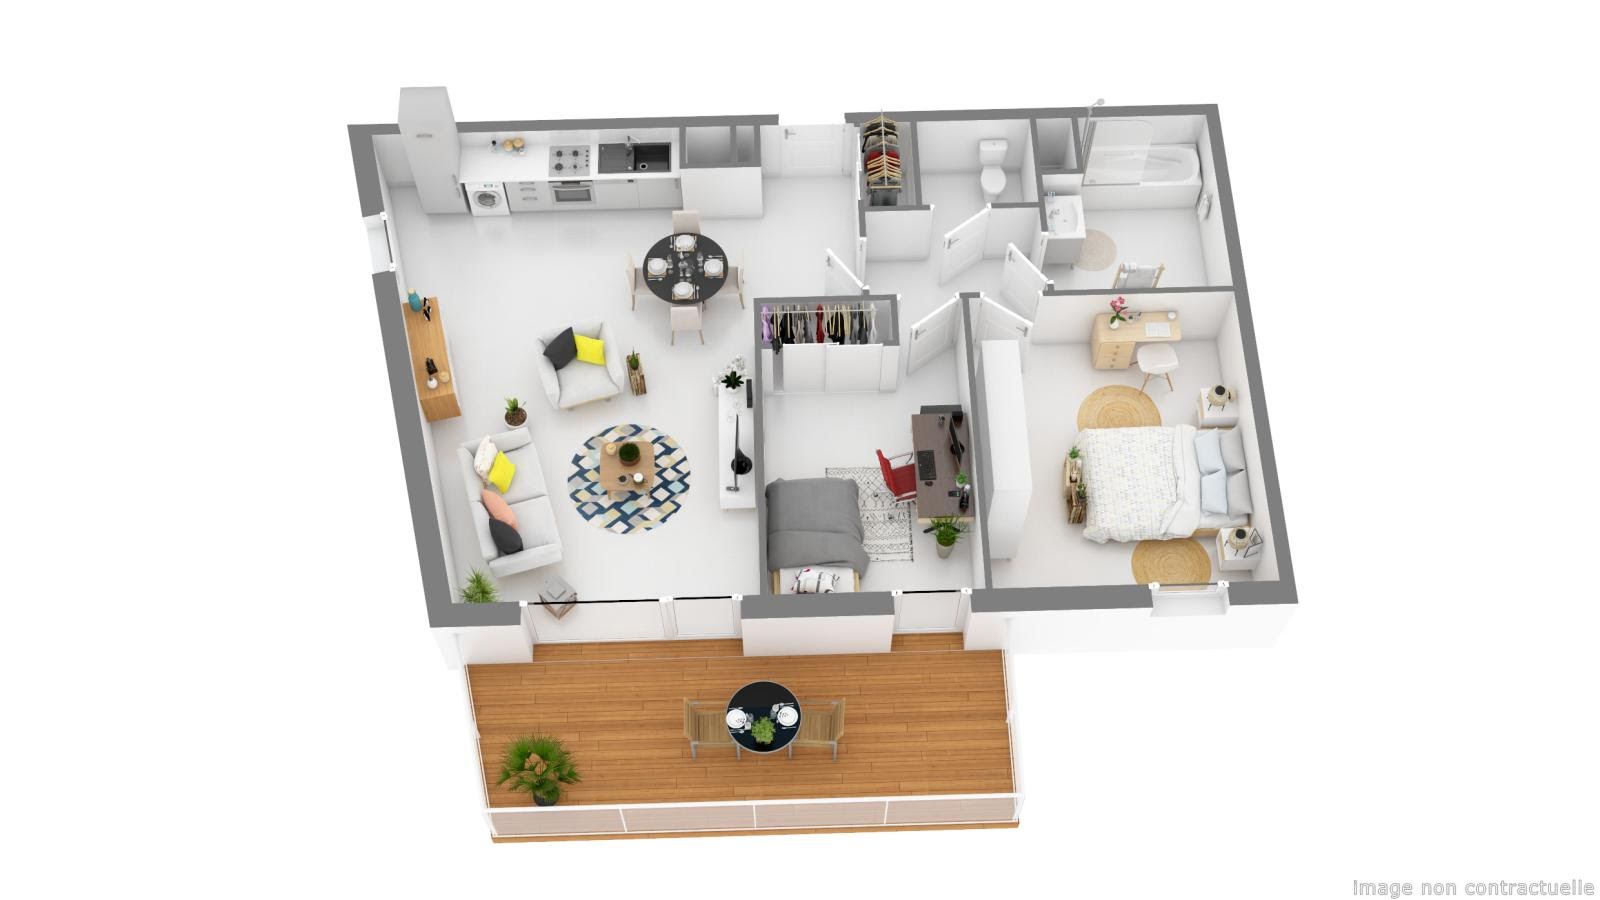 Location appartement 3 pièces 65 m2